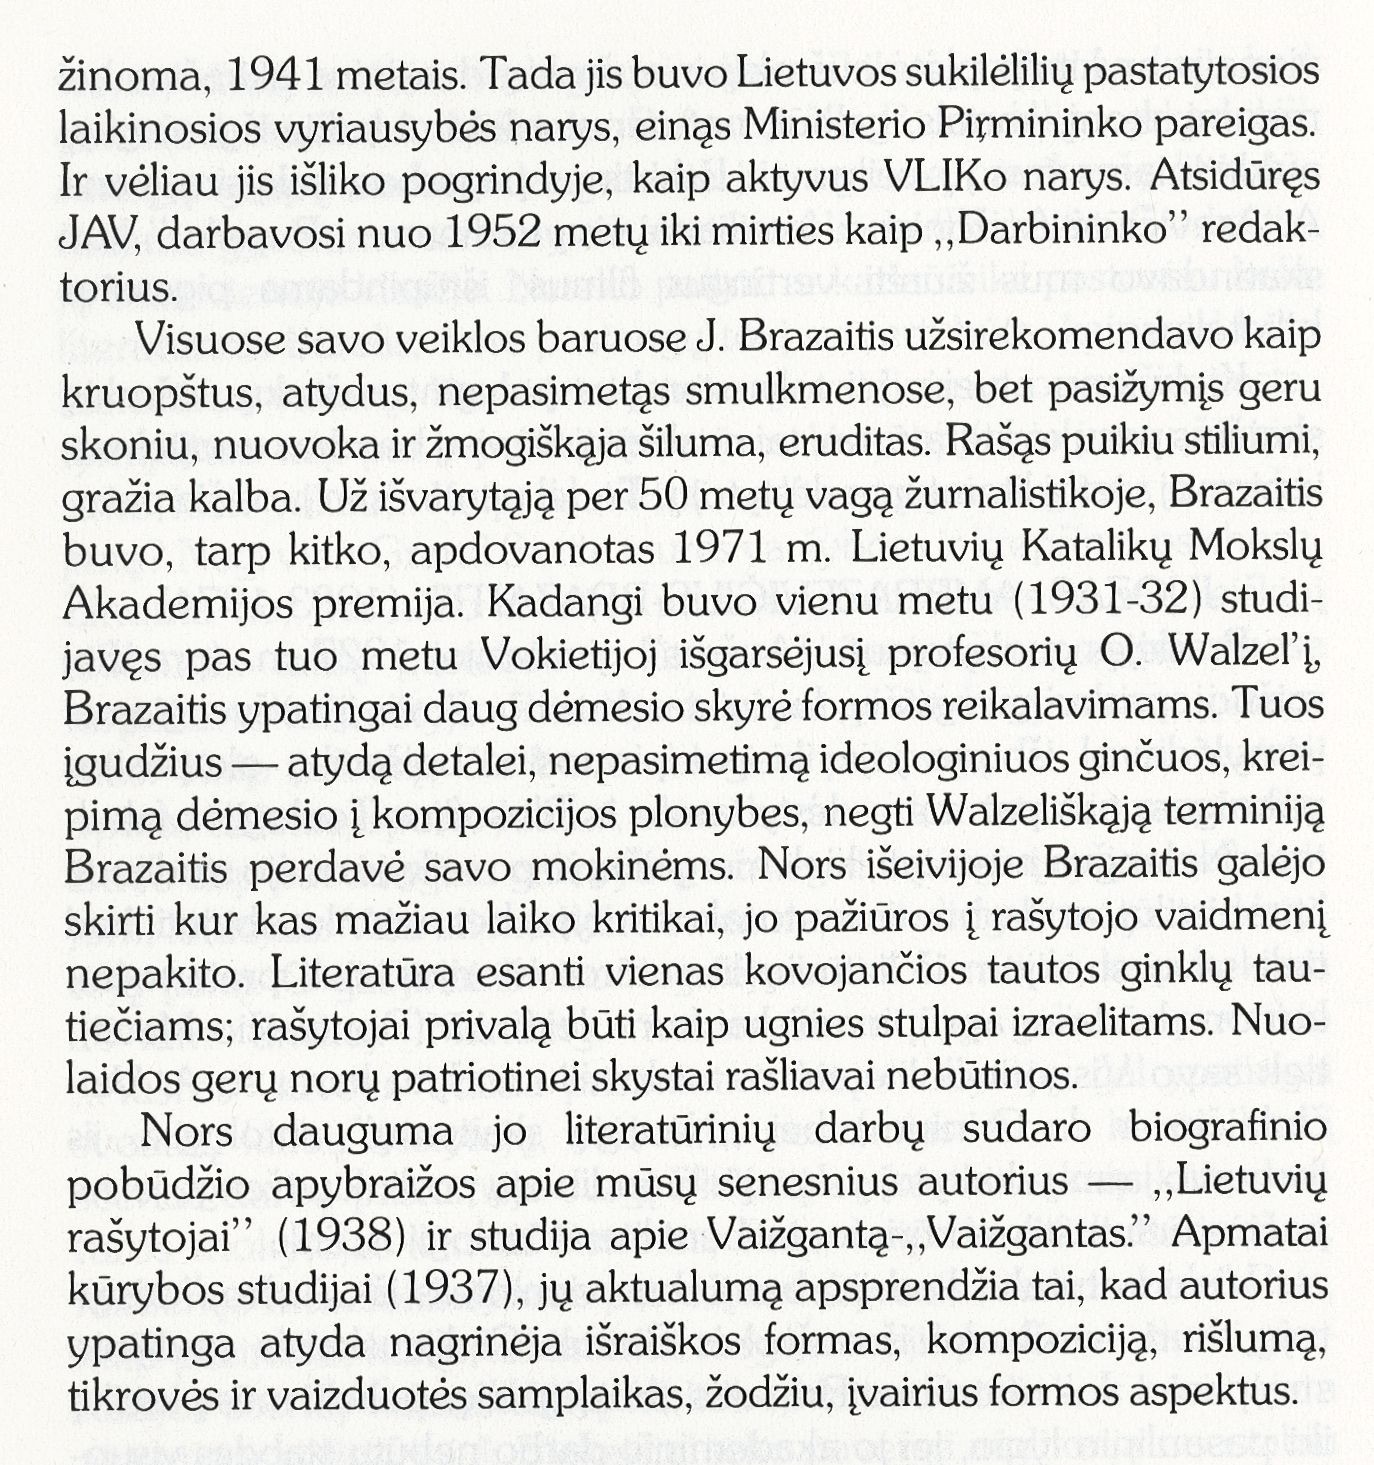 „Aušros“ auklėtiniai ir auklėtinės pasukę, pasukusios rašto keliais ... Juozas Ambrazevičius – Brazaitis (1903–1974) / Vytautas A. Jonynas // Prisimenam „Aušrą“. – Toronto: [s. n.], 1990, p. 99–100.